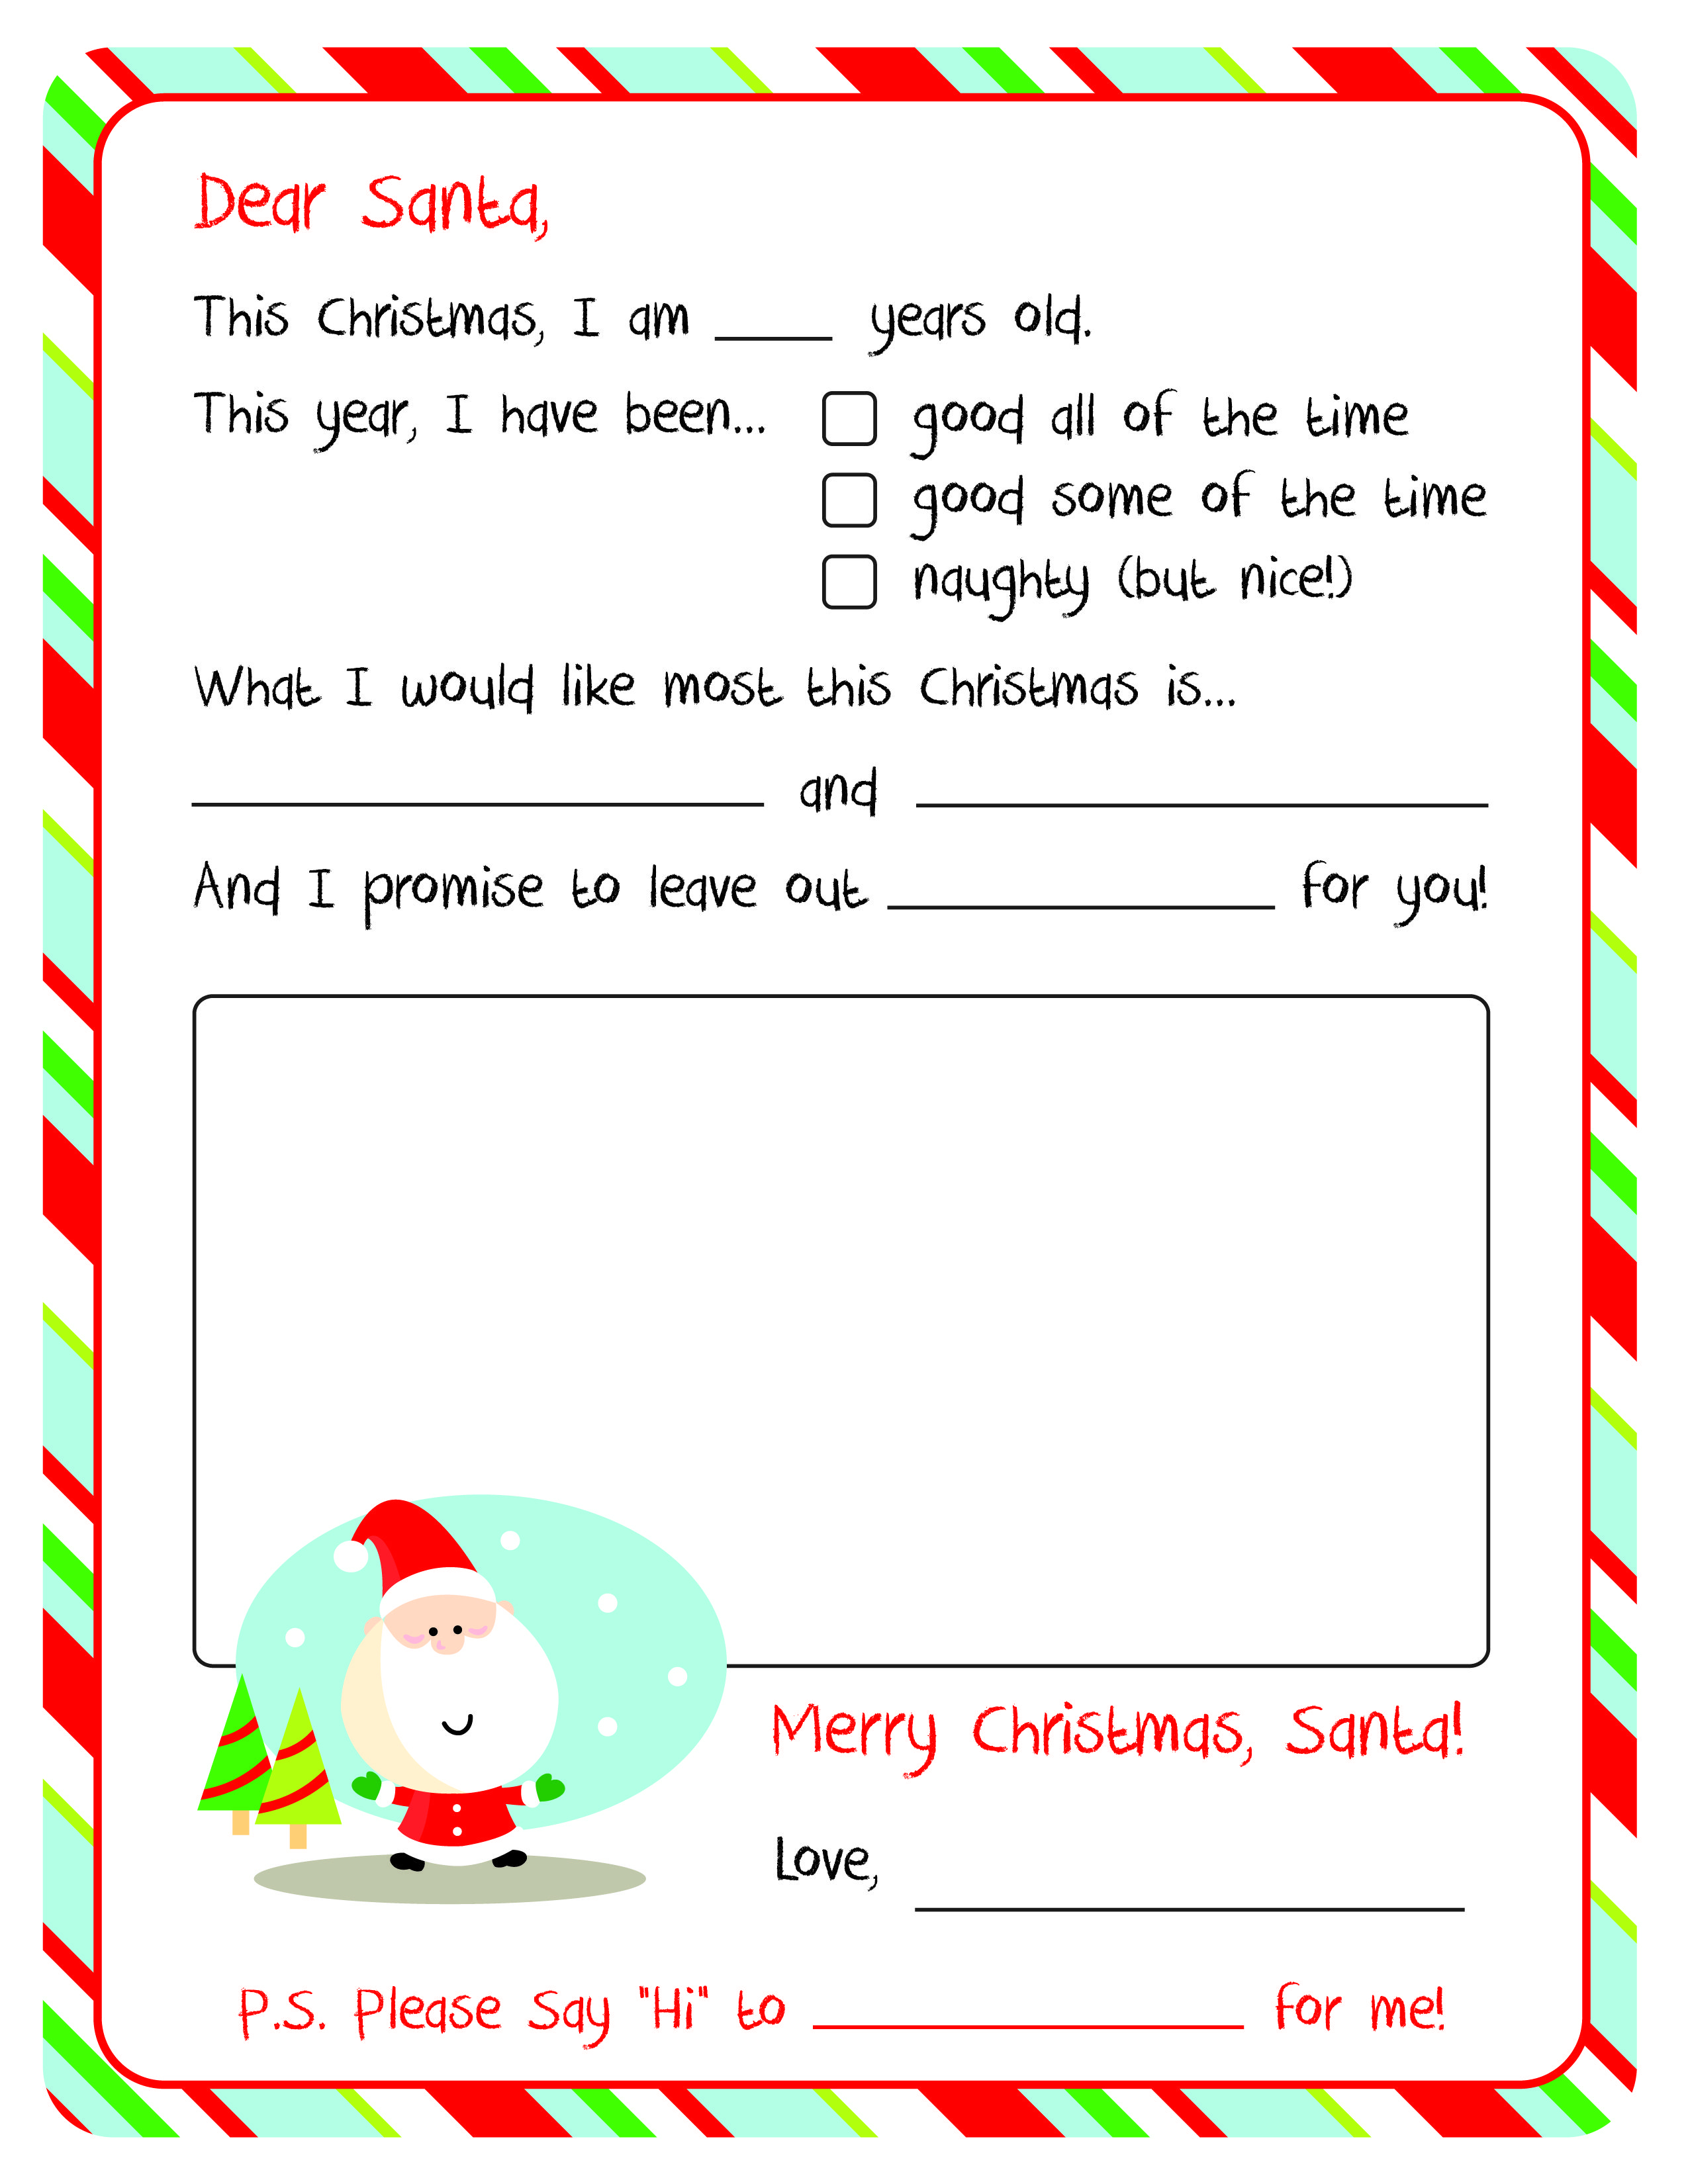 Letter To Santa – Free Printable | Christmas Ideas | Pinterest - Letter To Santa Template Free Printable